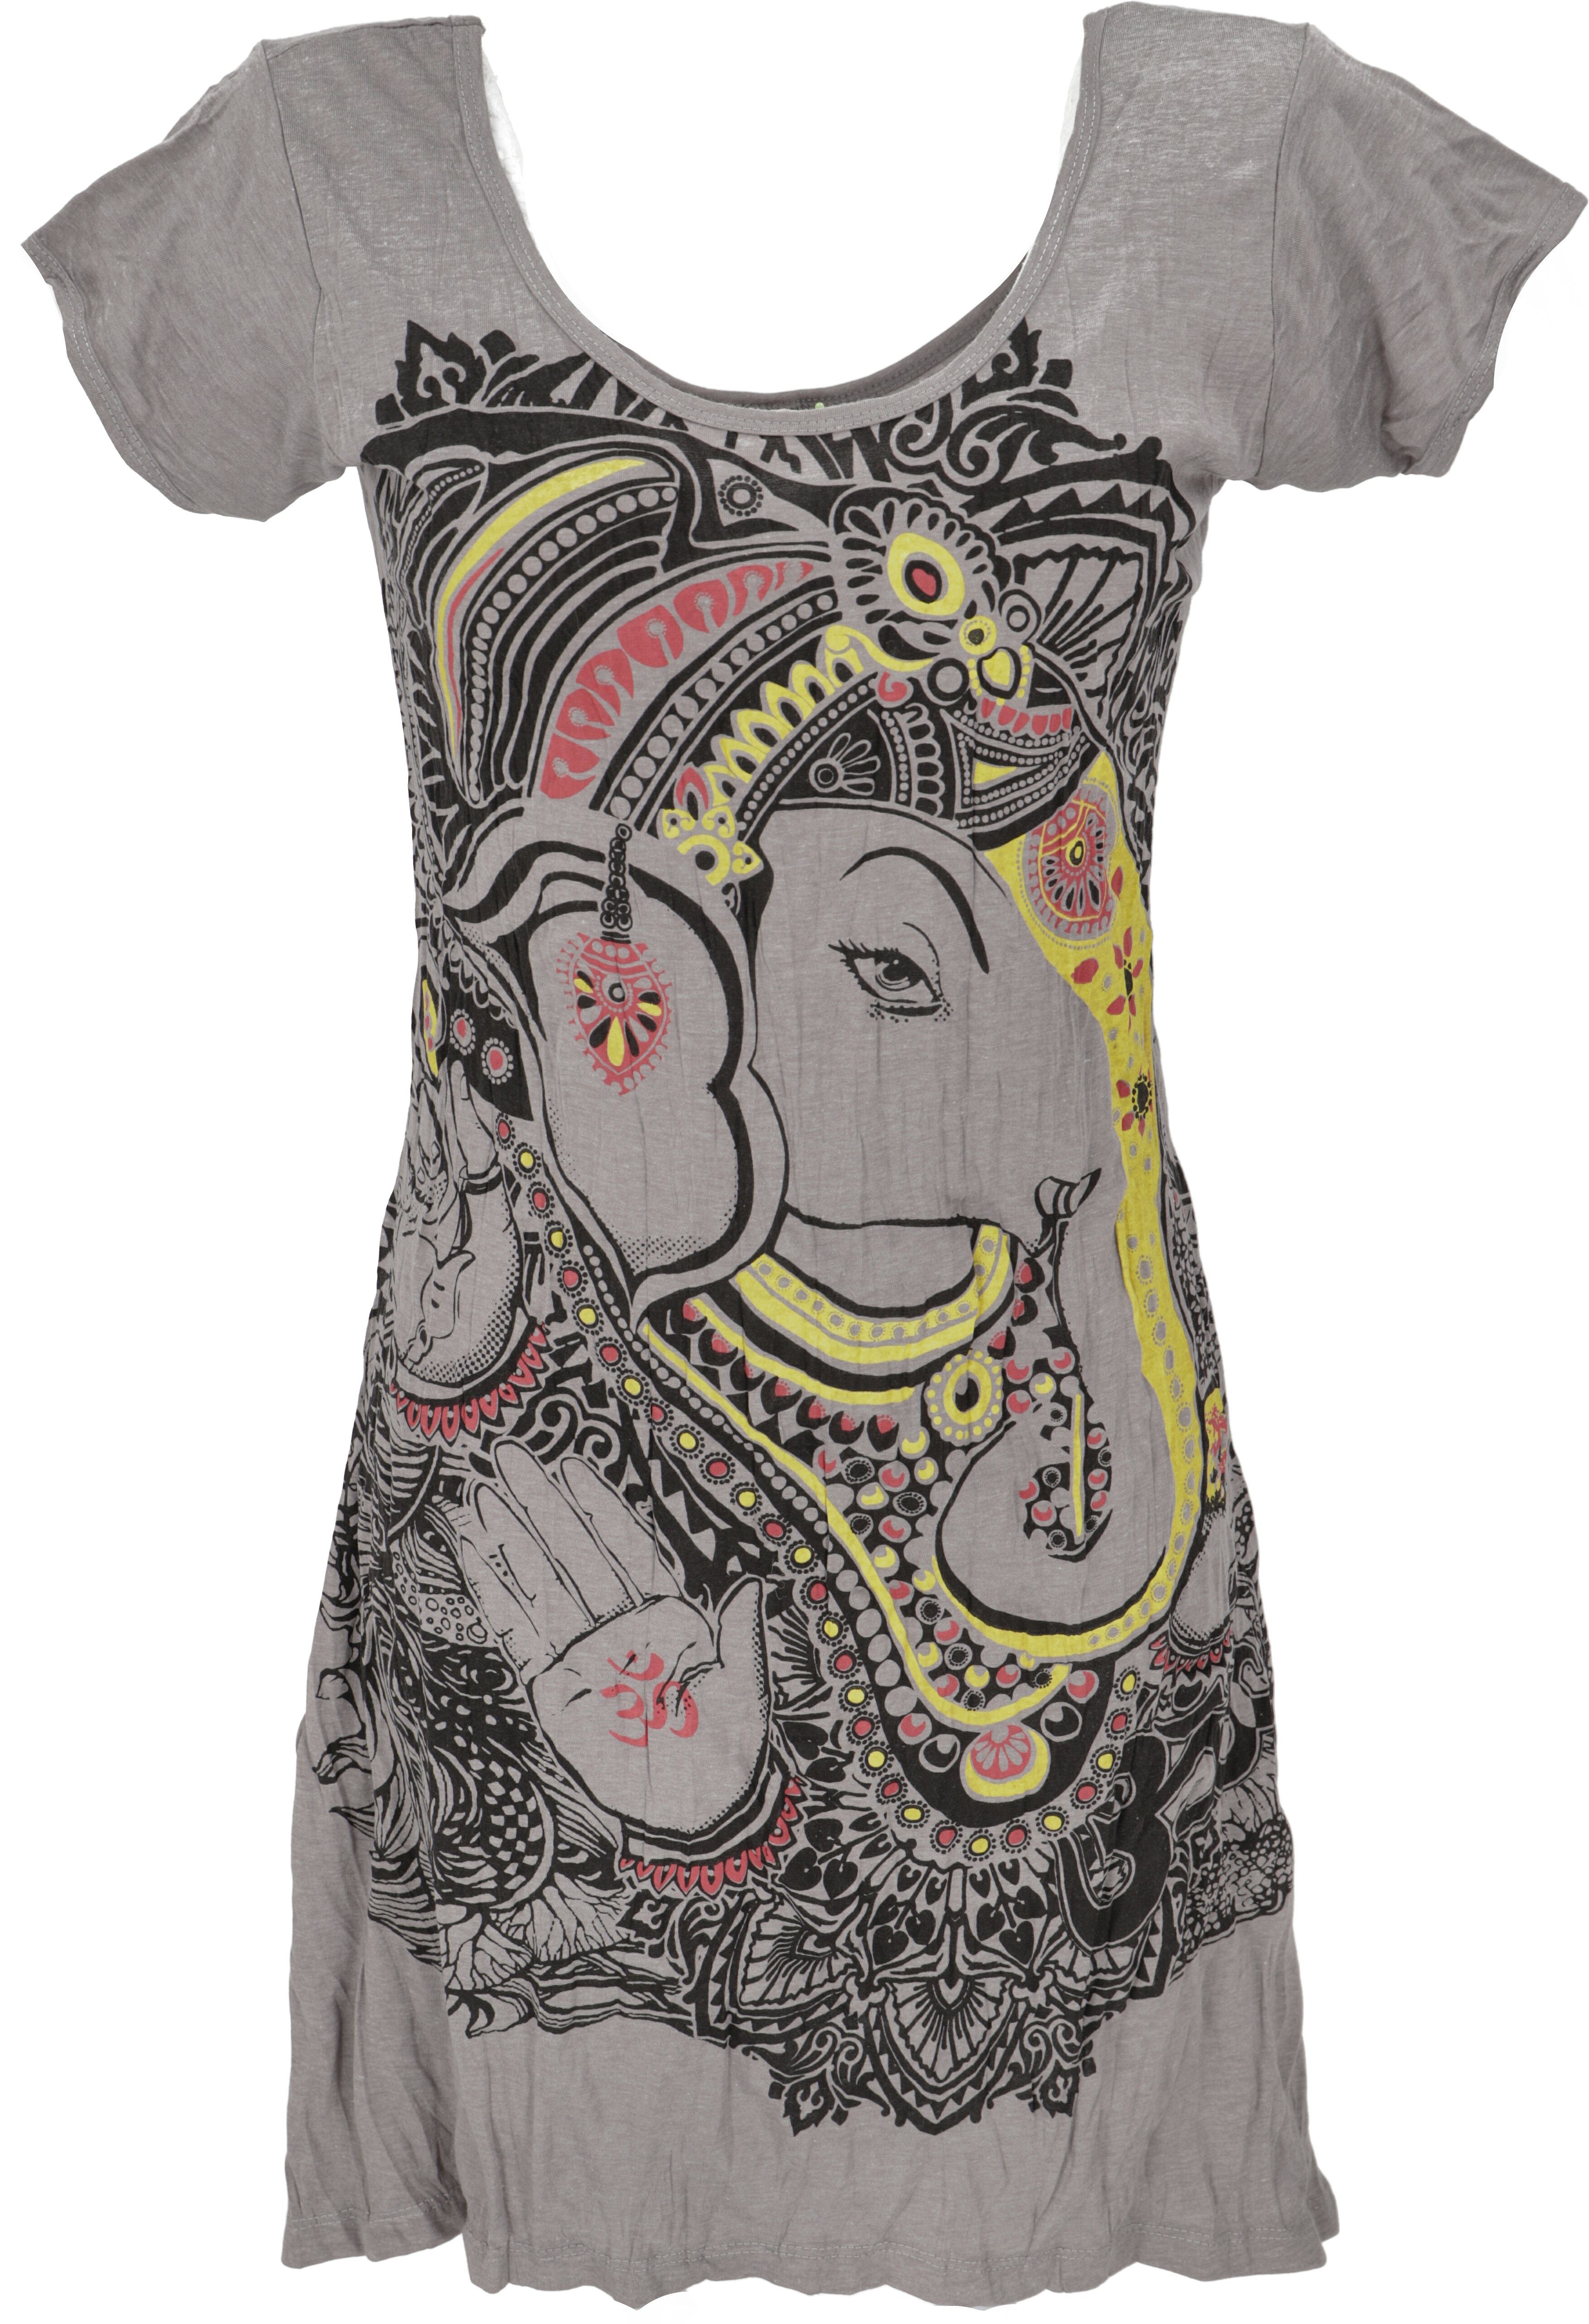 Guru-Shop T-Shirt Baba Longshirt, Kurzarm, Psytrance Minikleid -..  Festival, Goa Style, alternative Bekleidung